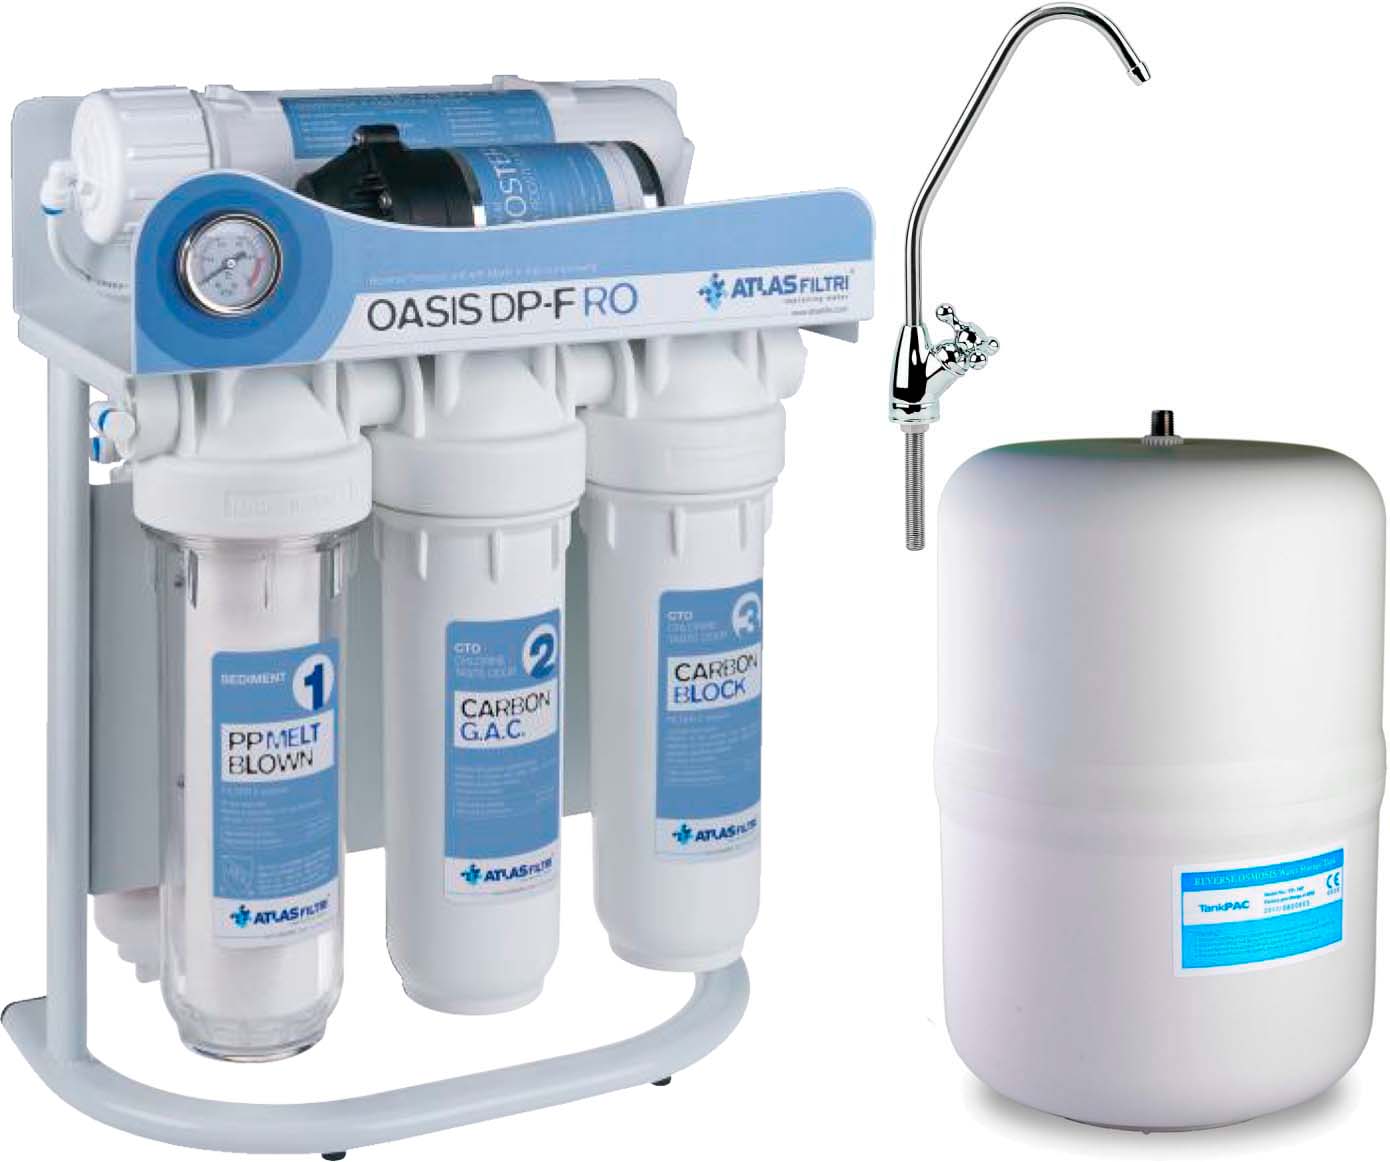 Фильтр Atlas Filtri для воды Atlas Filtri Oasis DP-F PUMP (насос, минерализатор) с каркасом RE6075350